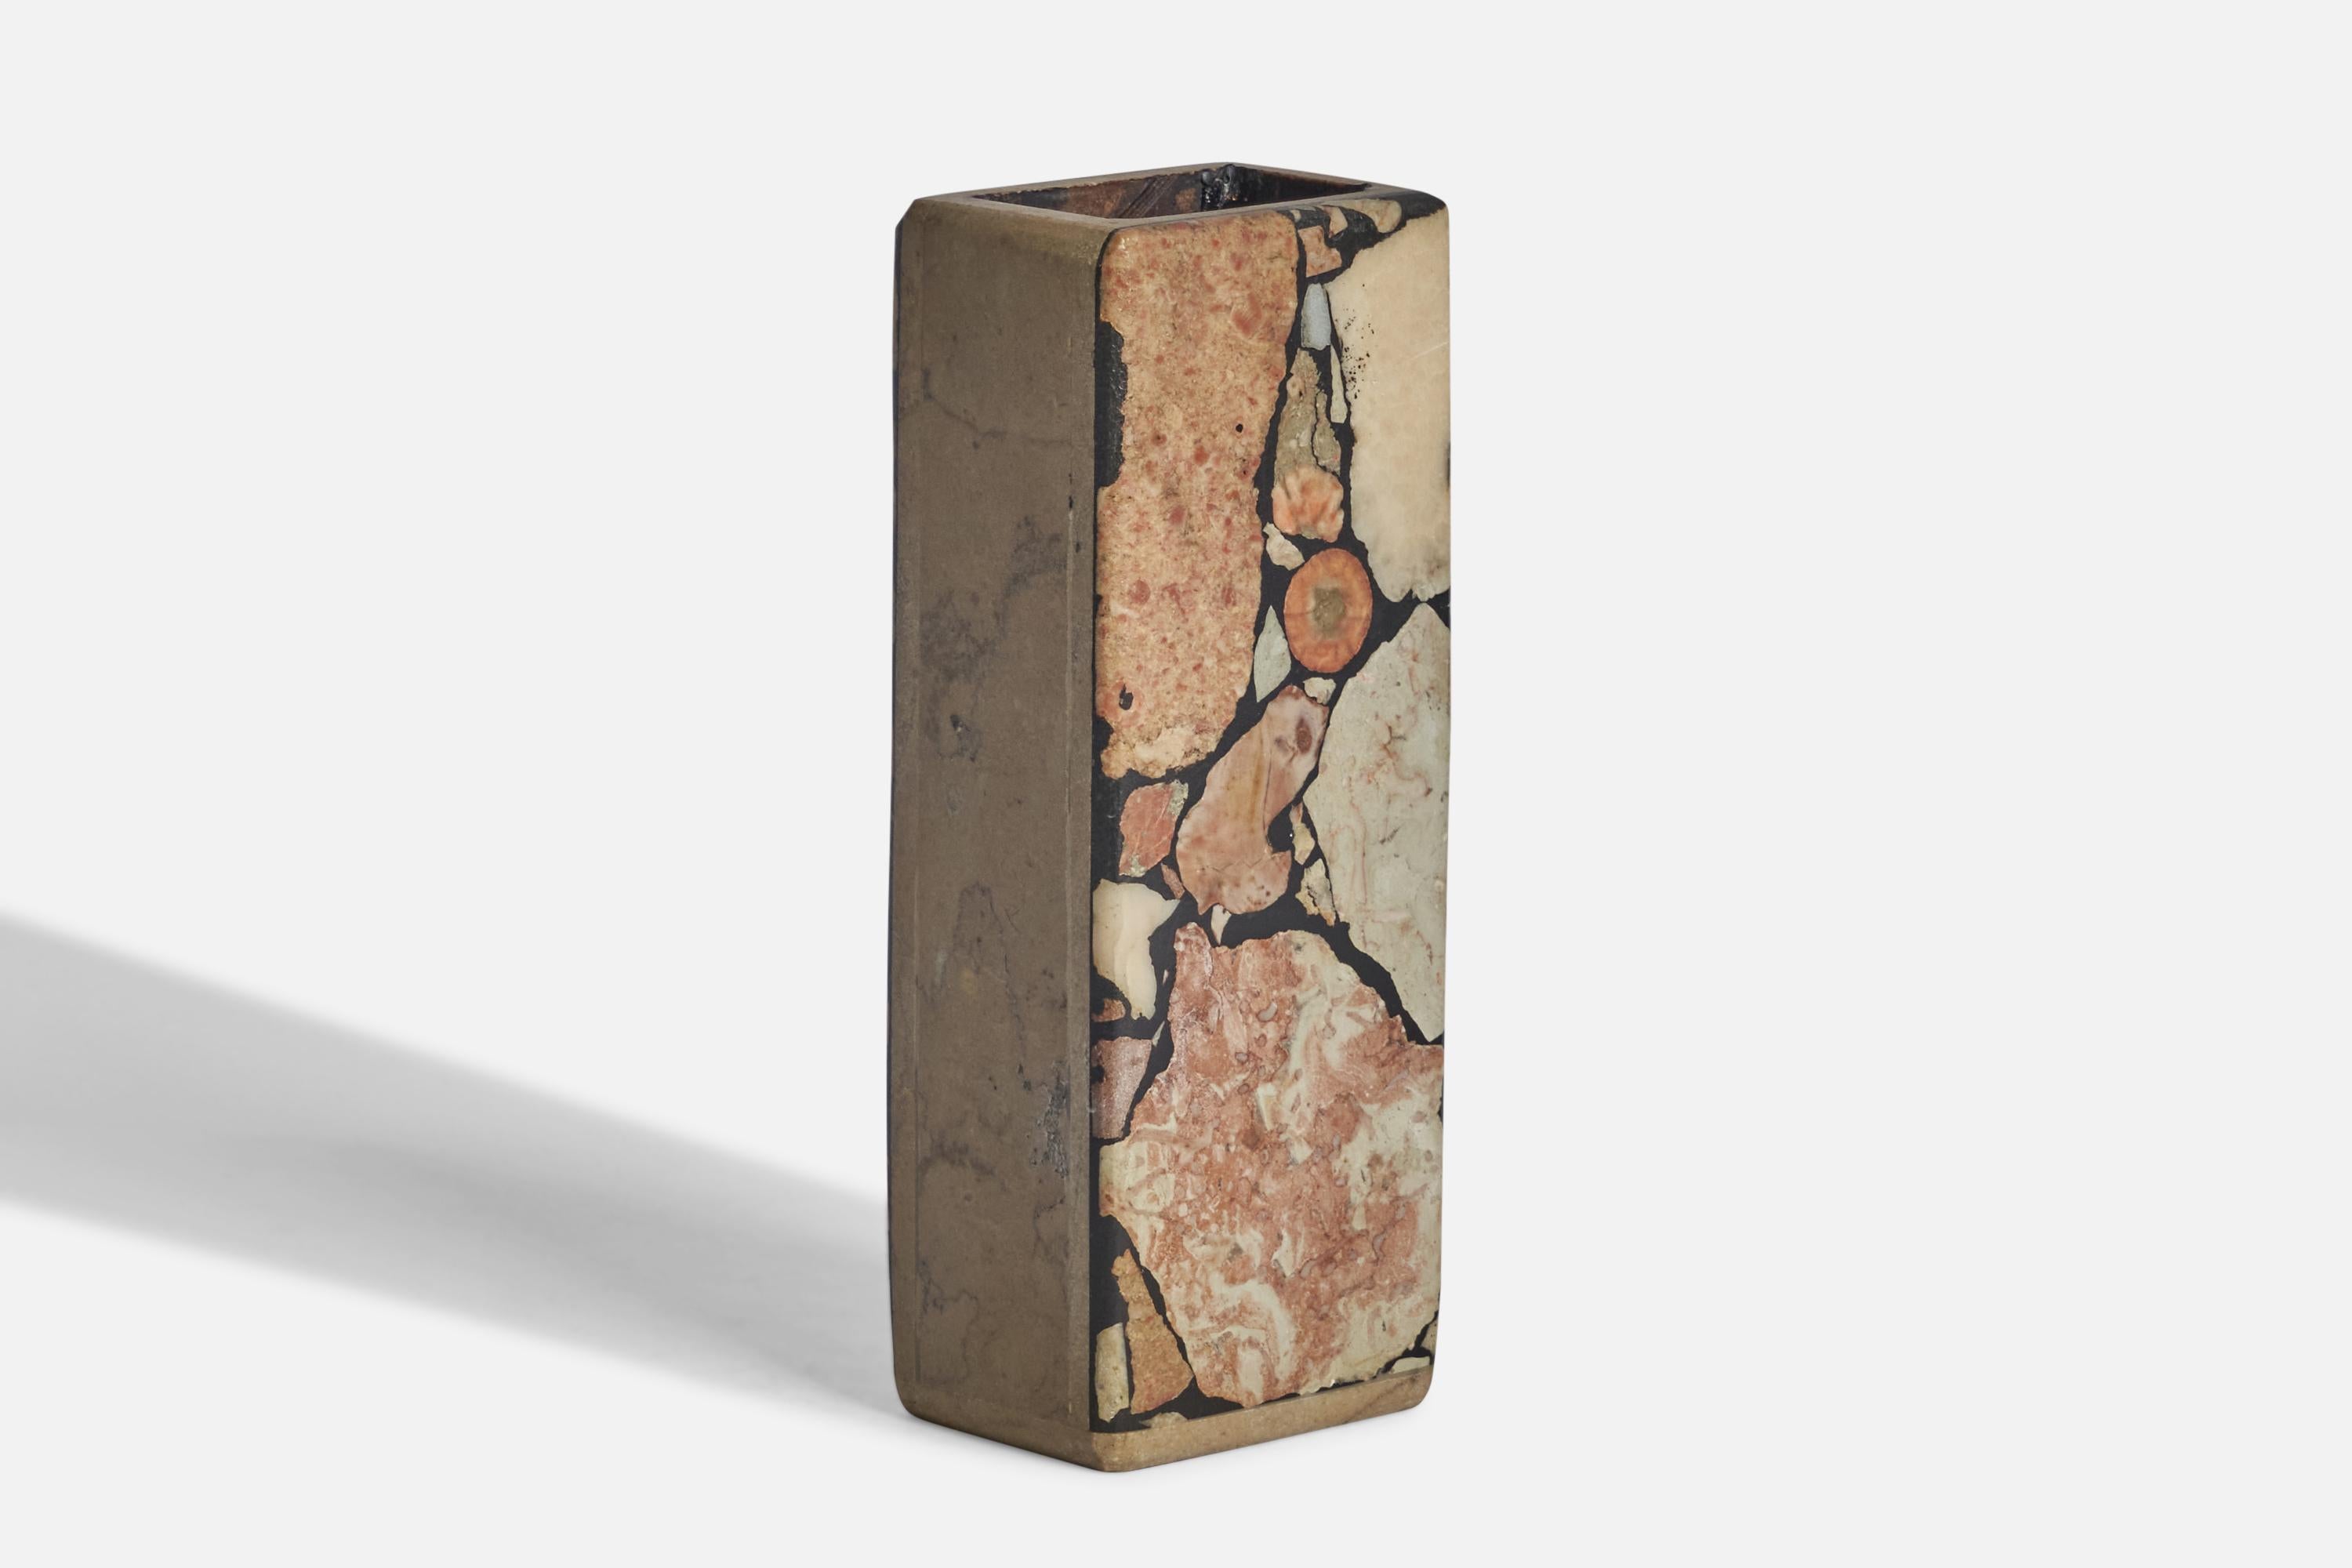 Vase en pierre fossile conçu et produit à Gotland, Suède, c. années 1970.
Inscription 